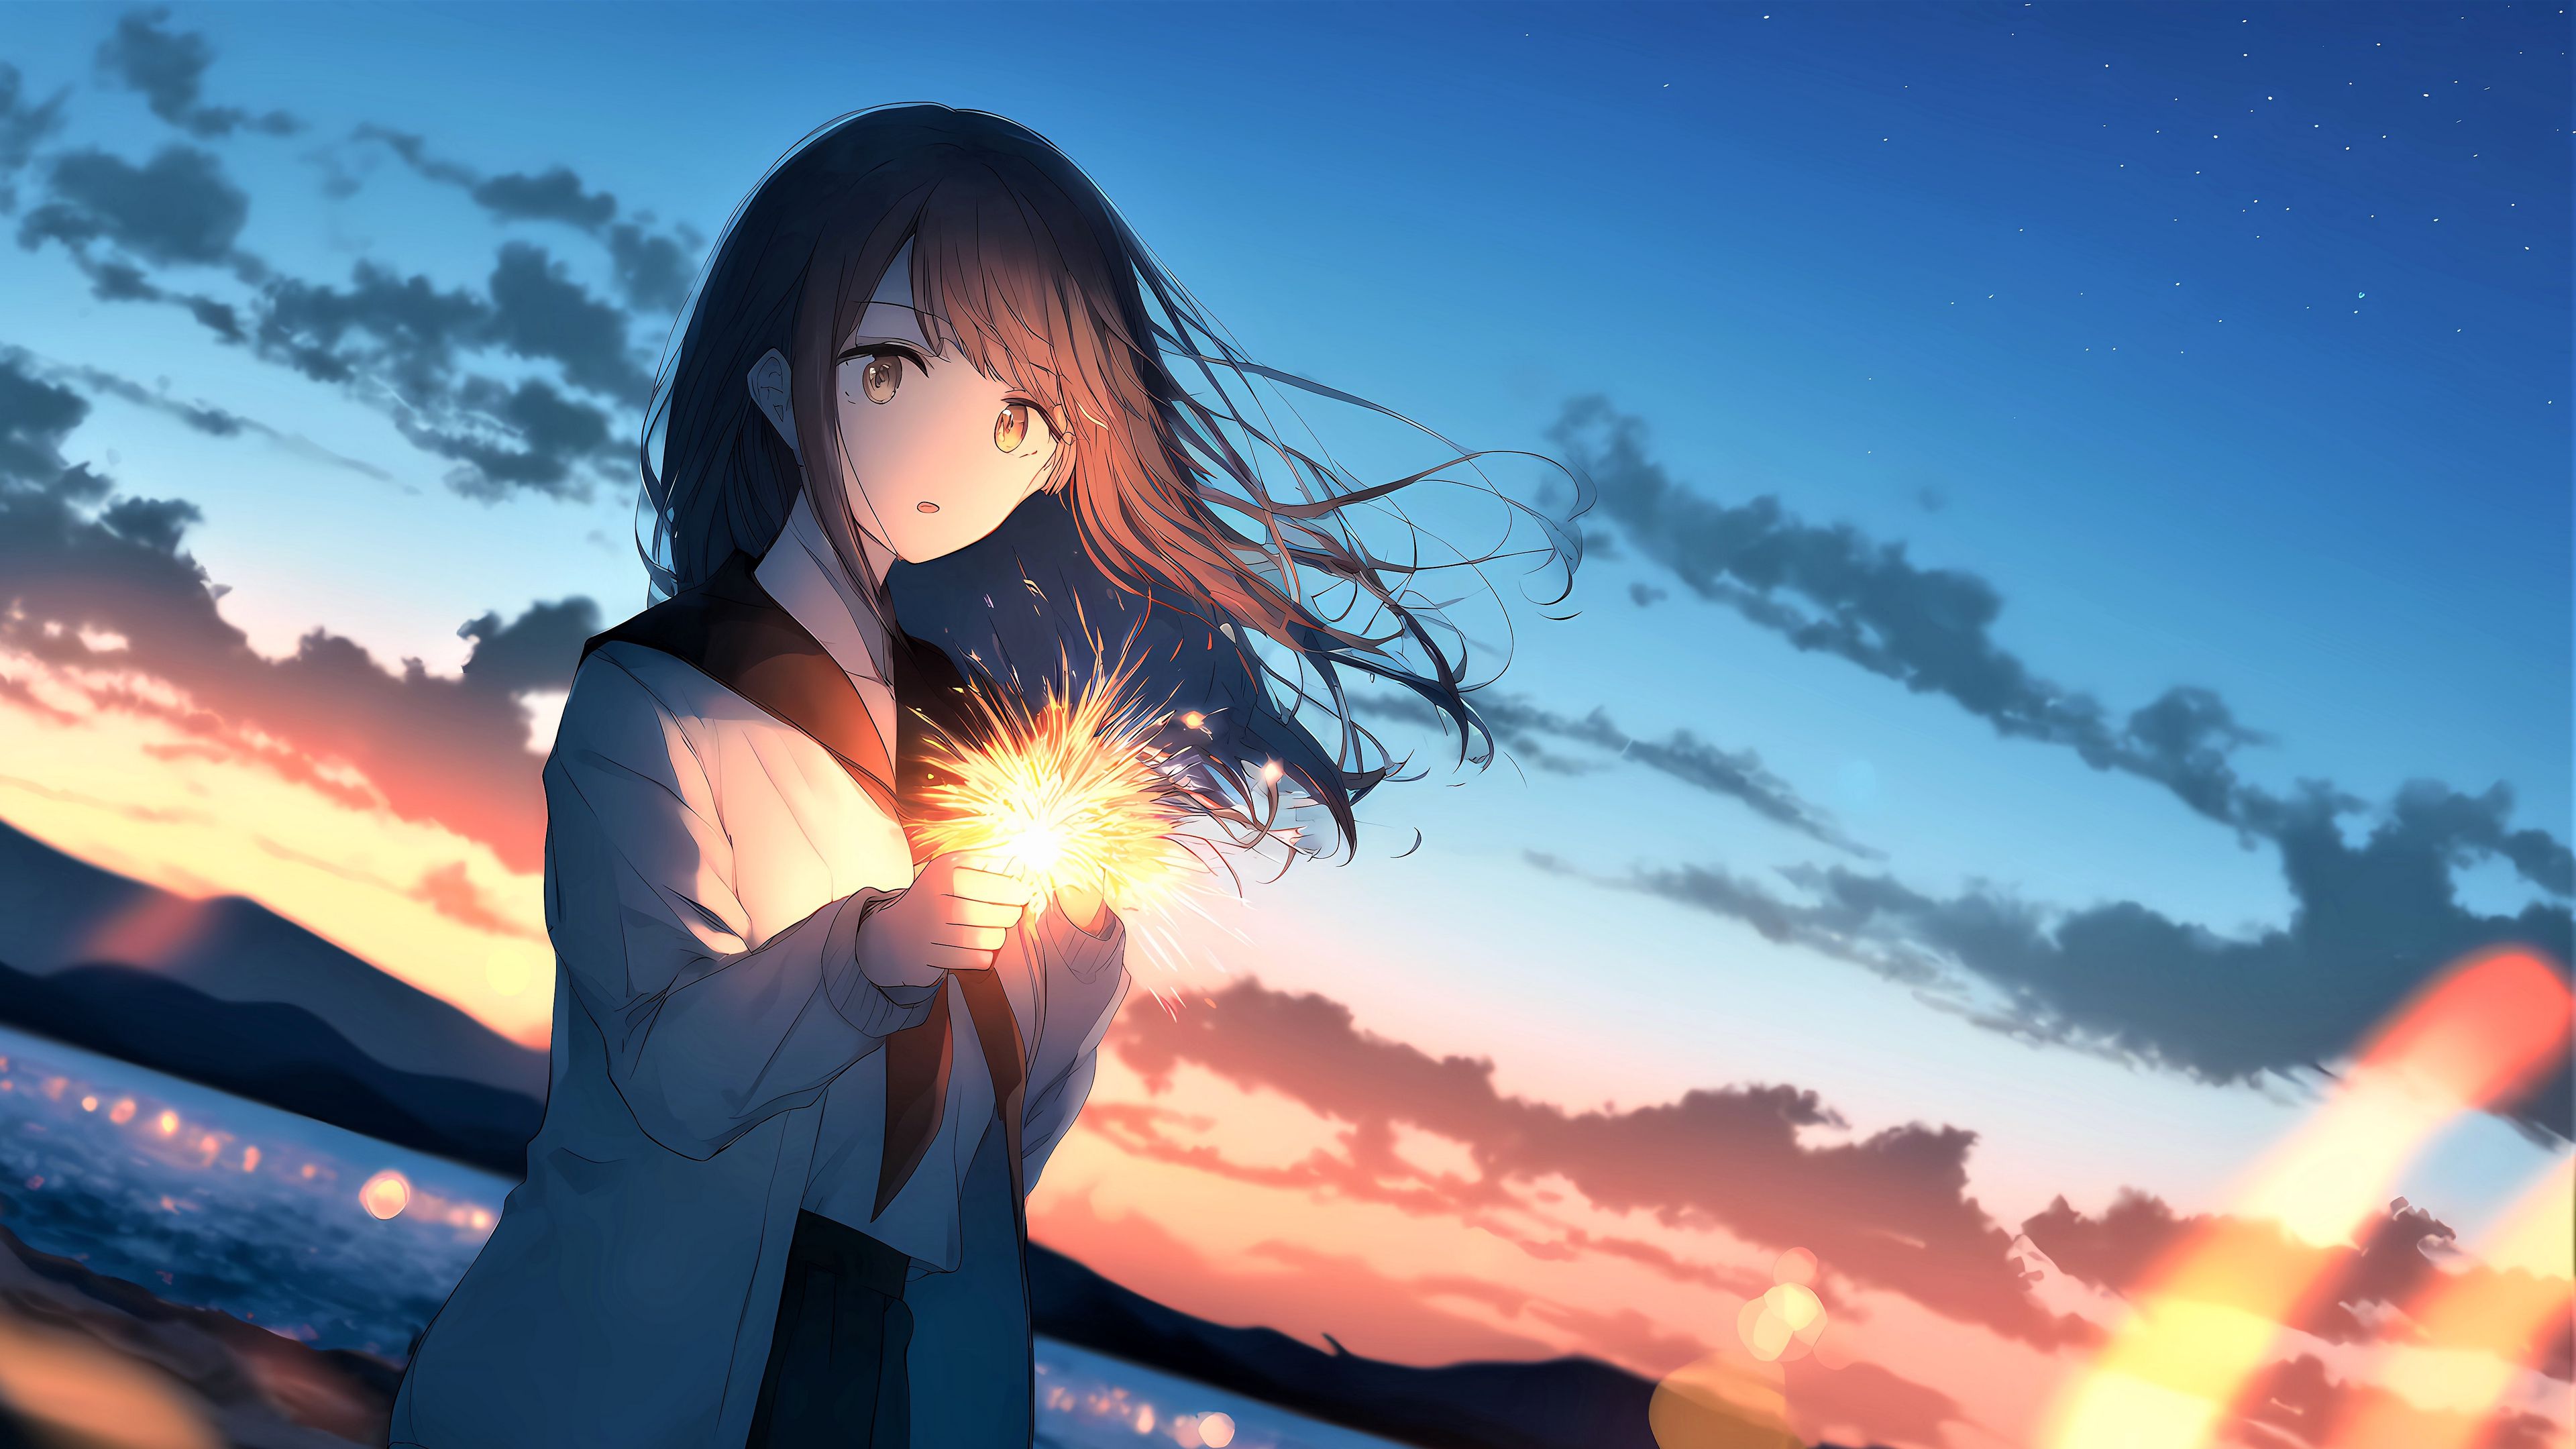 Cô gái - một trong những đề tài đầy cảm hứng trong thế giới Anime. Hãy tận hưởng đáng kinh ngạc của những thước phim Anime với những hình ảnh rực rỡ, sáng tạo và độc đáo. Download wallpaper 3840x2160 girl, sparkler, glow, evening, anime ... để tận hưởng trải nghiệm thú vị nhất.